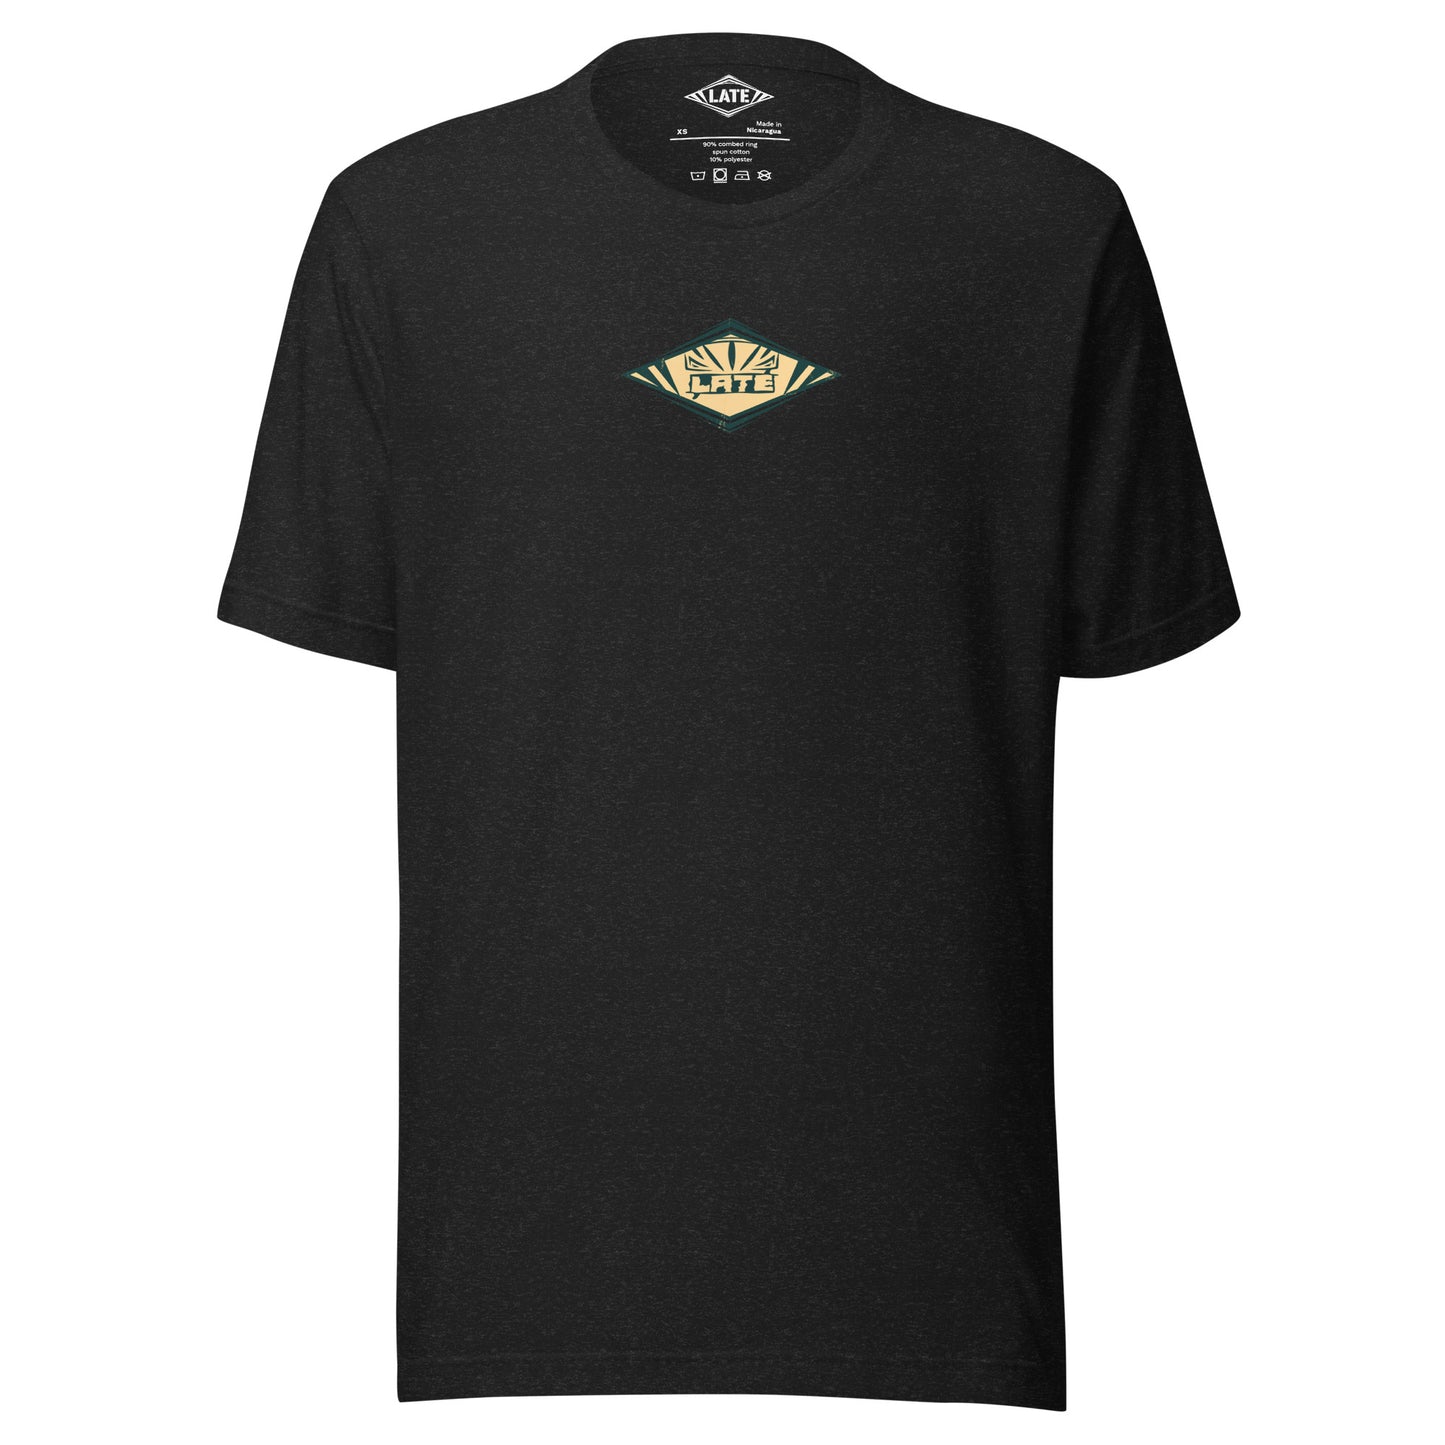 T-Shirt rétro Radical Wave, inspiration maori et vagues des spots mondiaux. Tee shirt unisexe de face noir heather